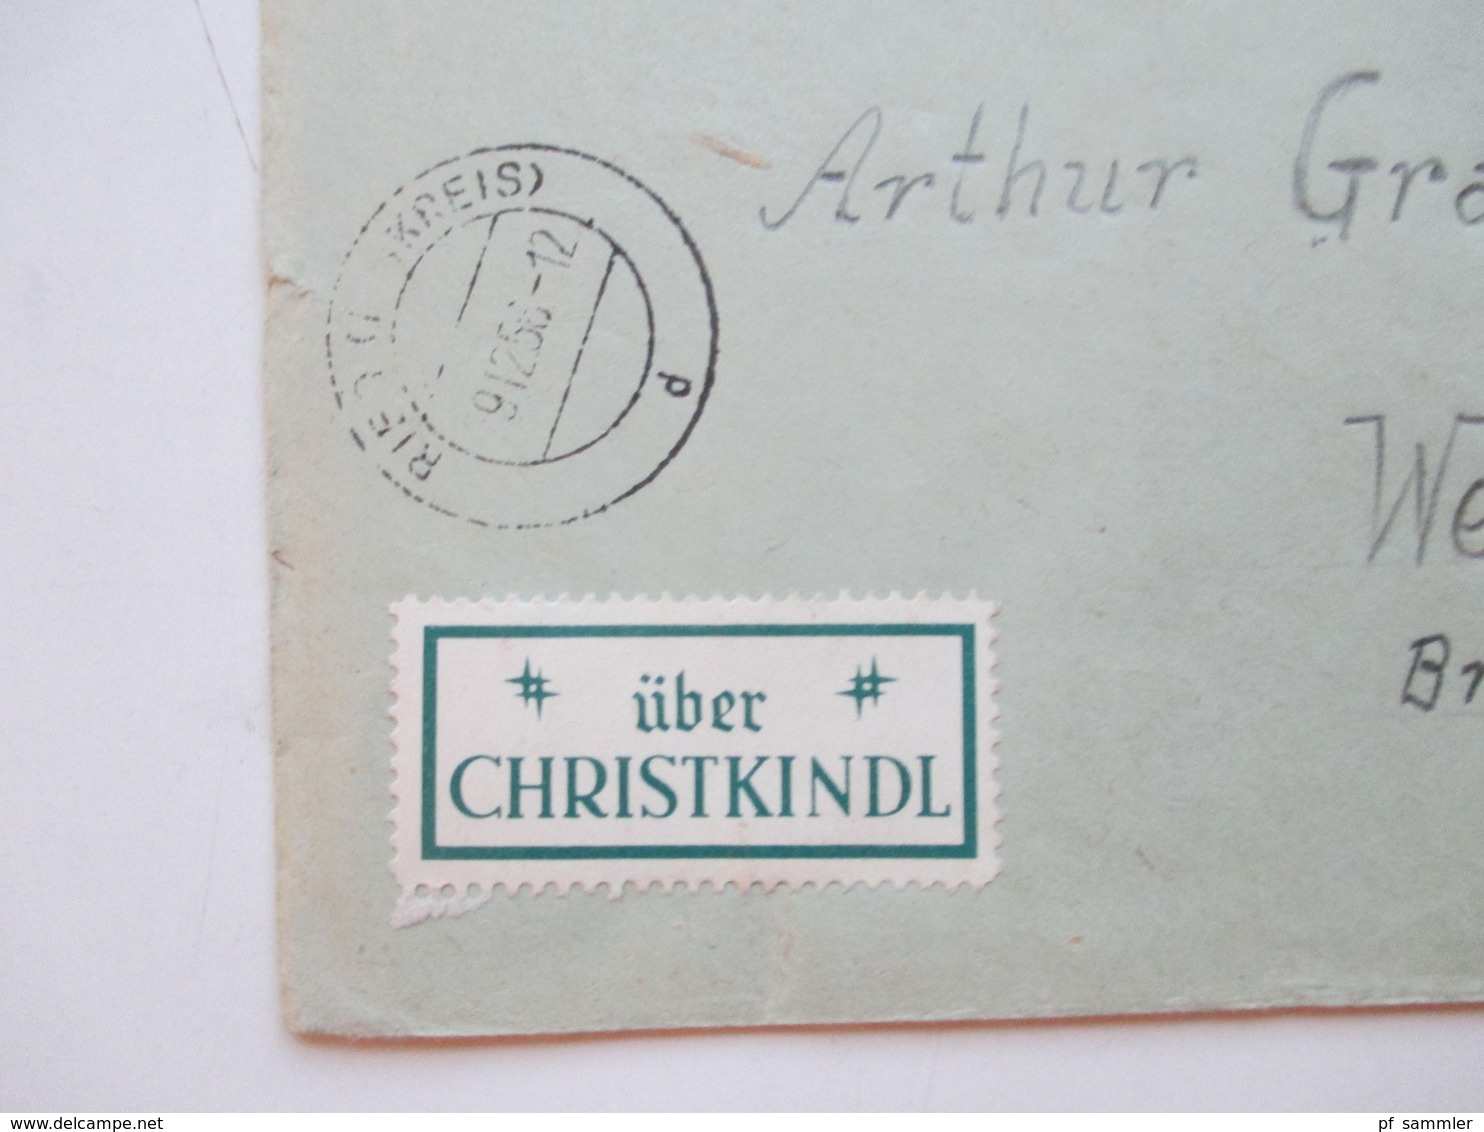 Belegeposten Österreich Christkindl 1956 - 2012 mit über 60 Stk. etl. Leitzettel über Christkindl Fundgrube!! Reco usw.